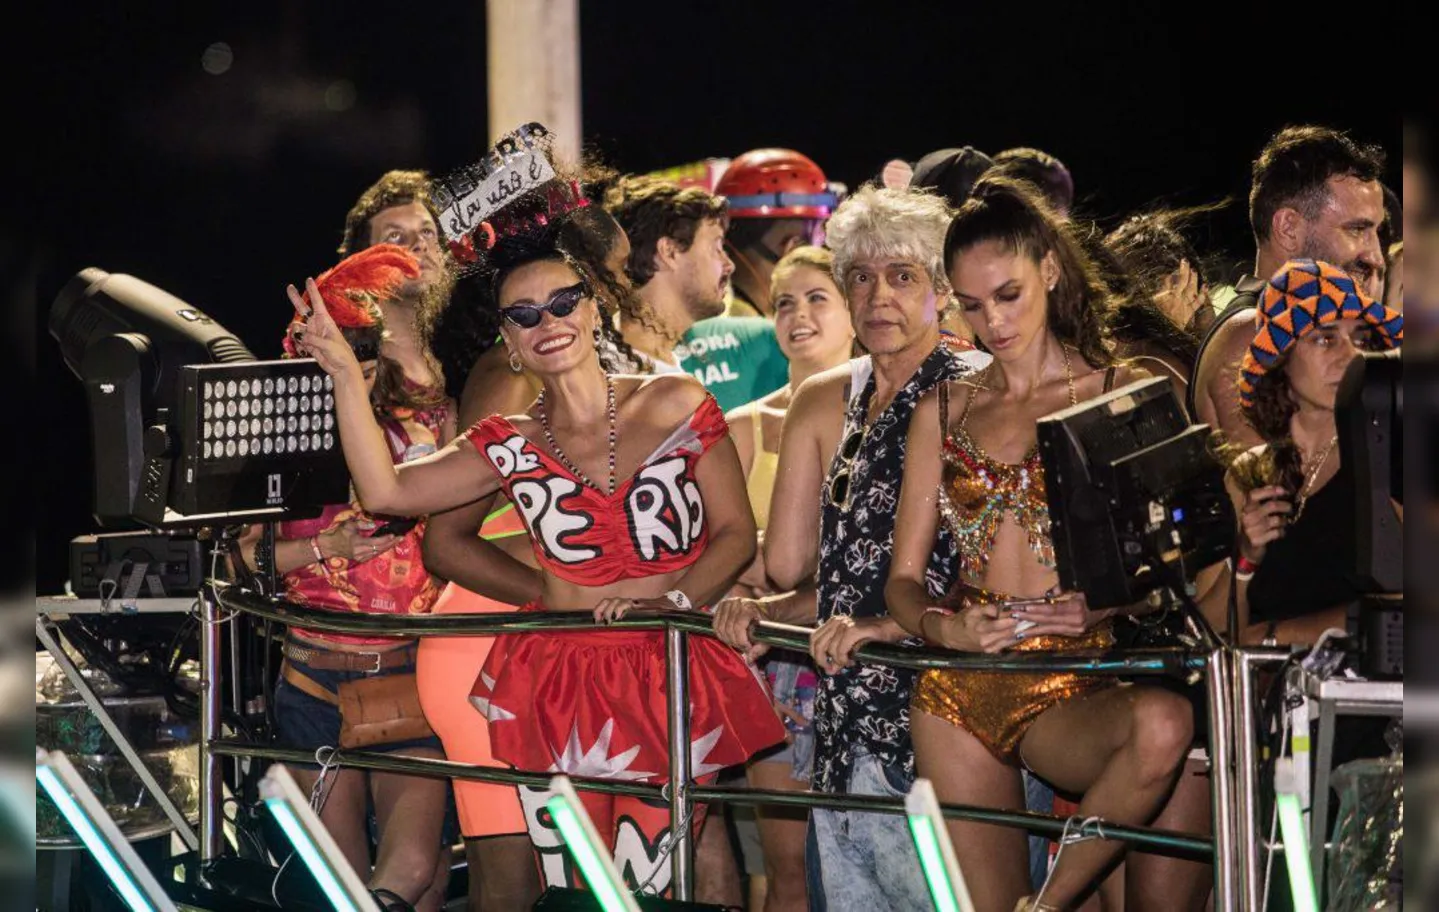 Com um look vermelho, Luana Xavier curtiu ao som de Ivete Sangalo | Fotos: Tati Freitas | Divulgação